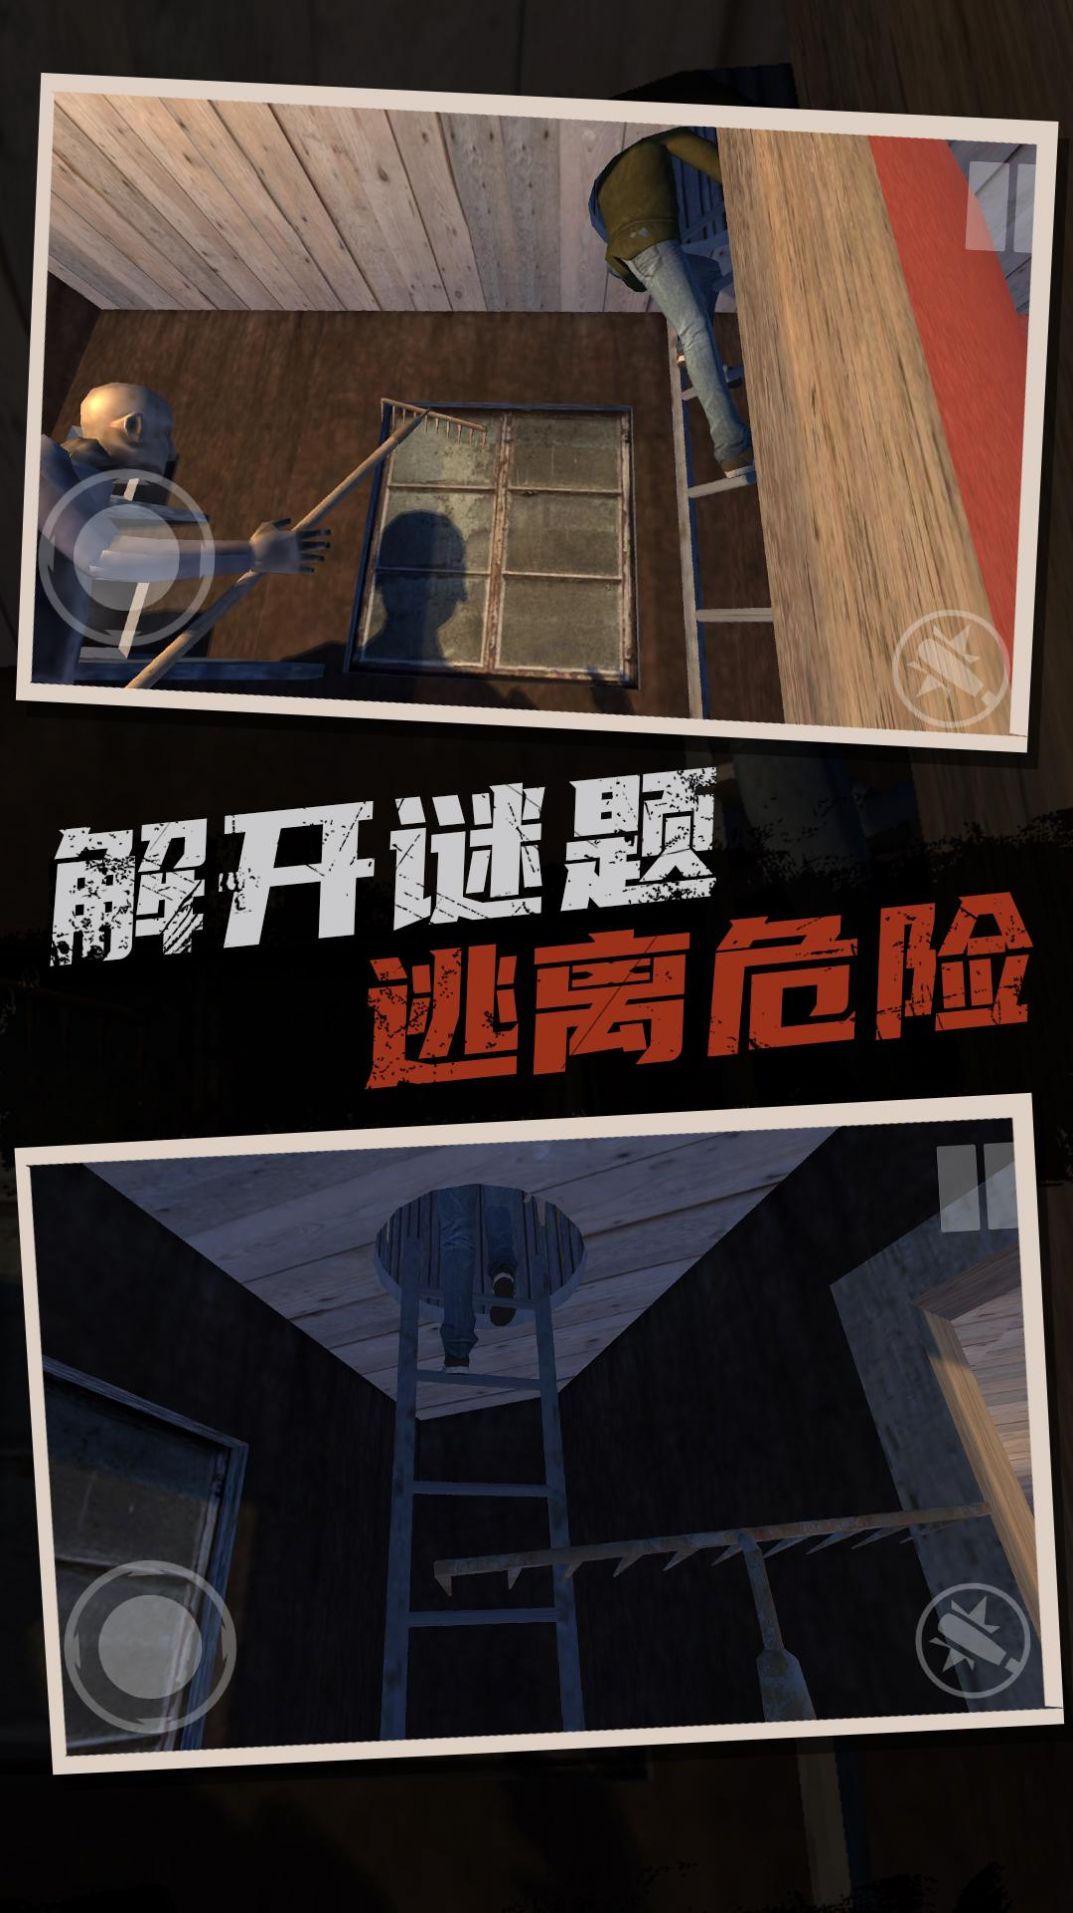 恐怖奶奶逃亡之旅手机版下载,恐怖奶奶逃亡之旅游戏中文手机版 v1.0.0